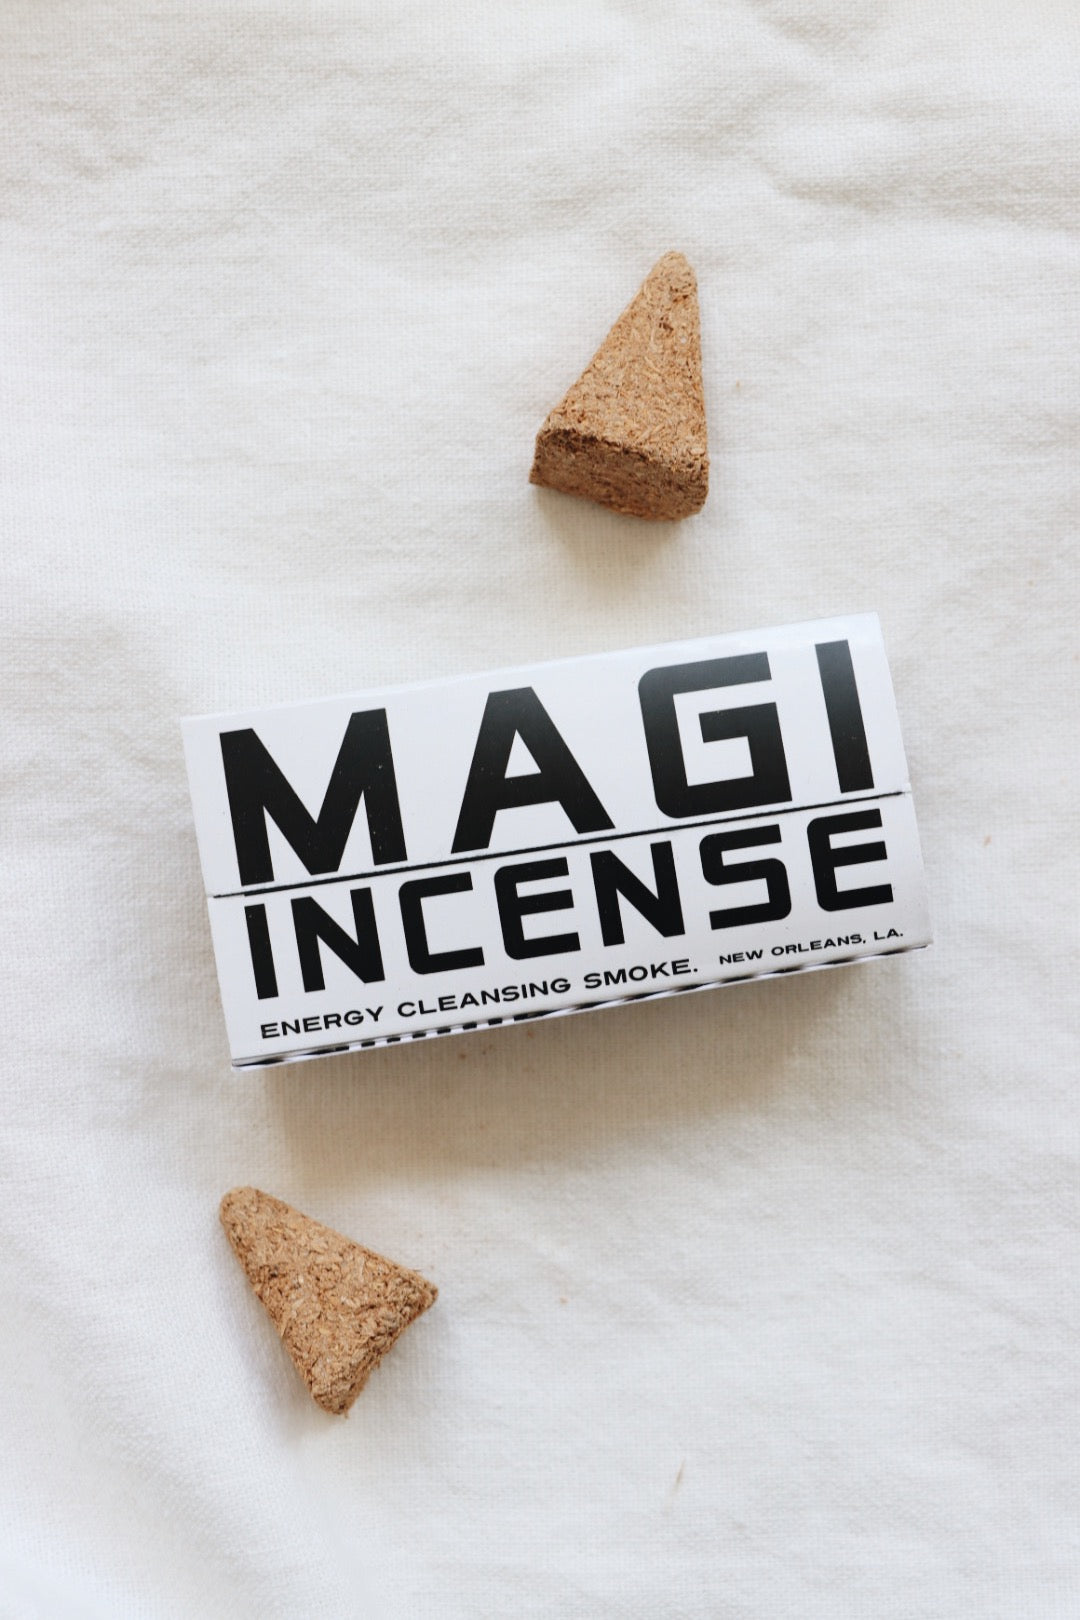 Magi Incense